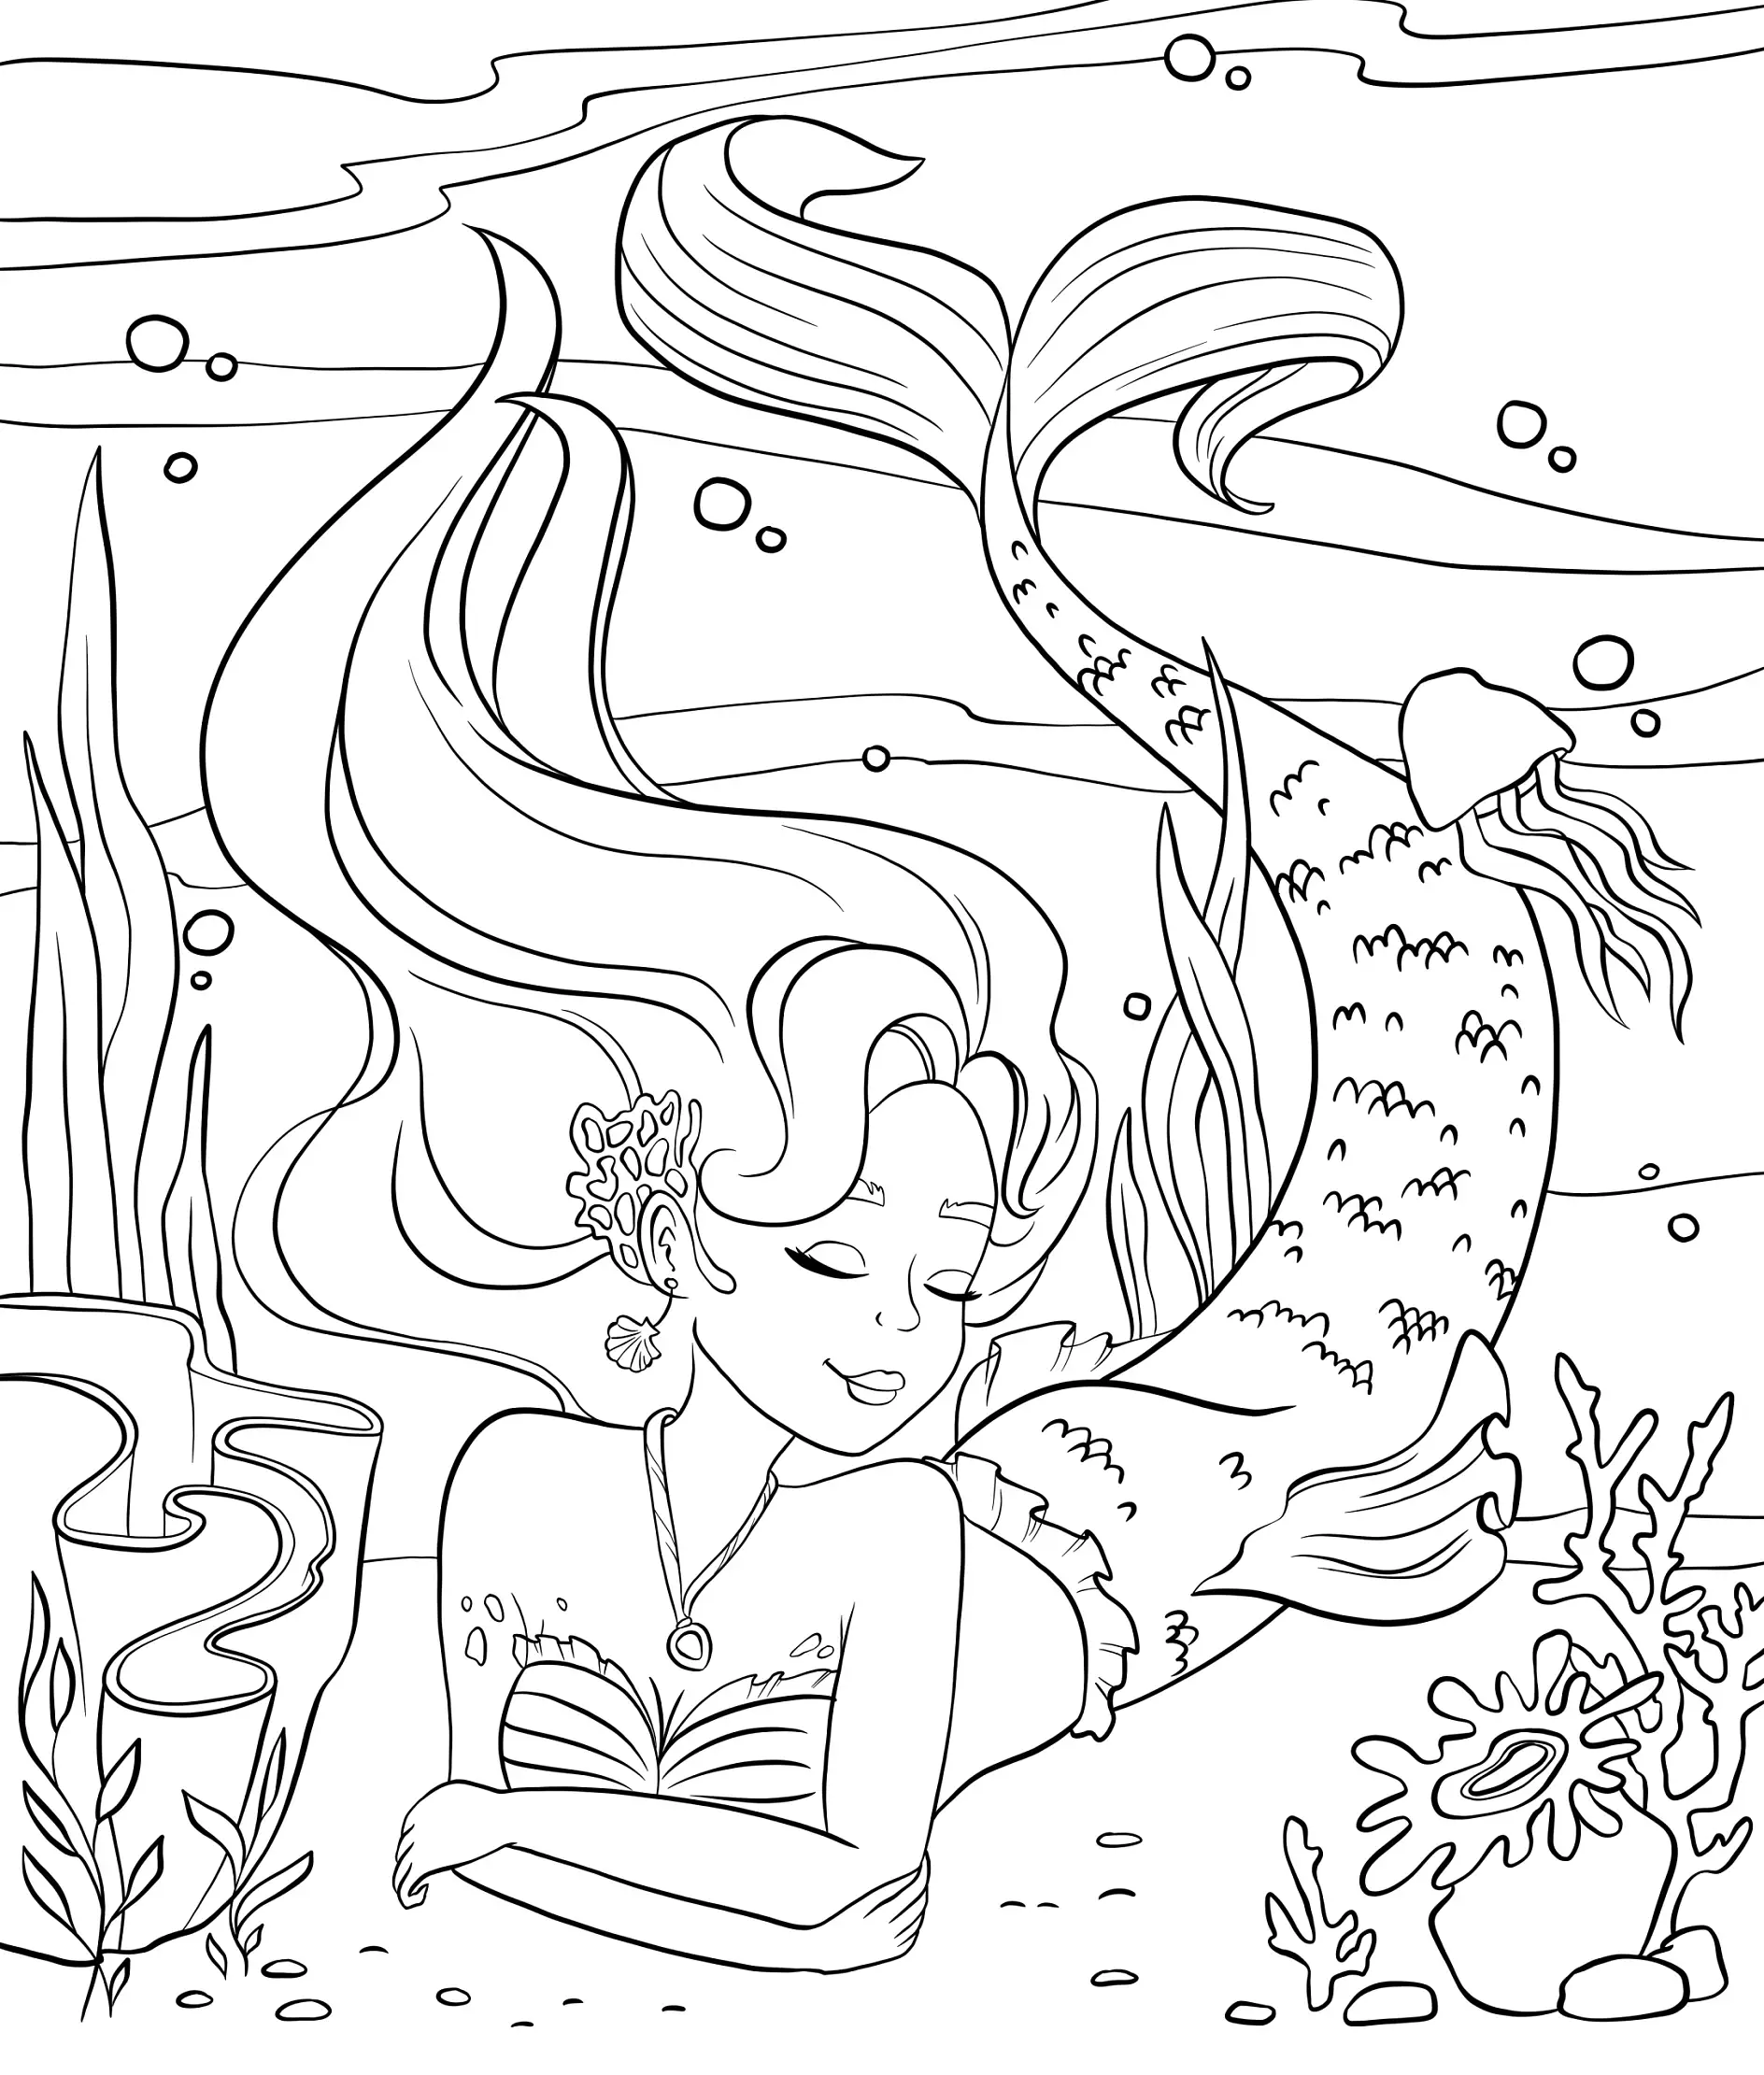 Ausmalbild Meerjungfrau liegt am Meeresboden umgeben von Pflanzen und Korallen